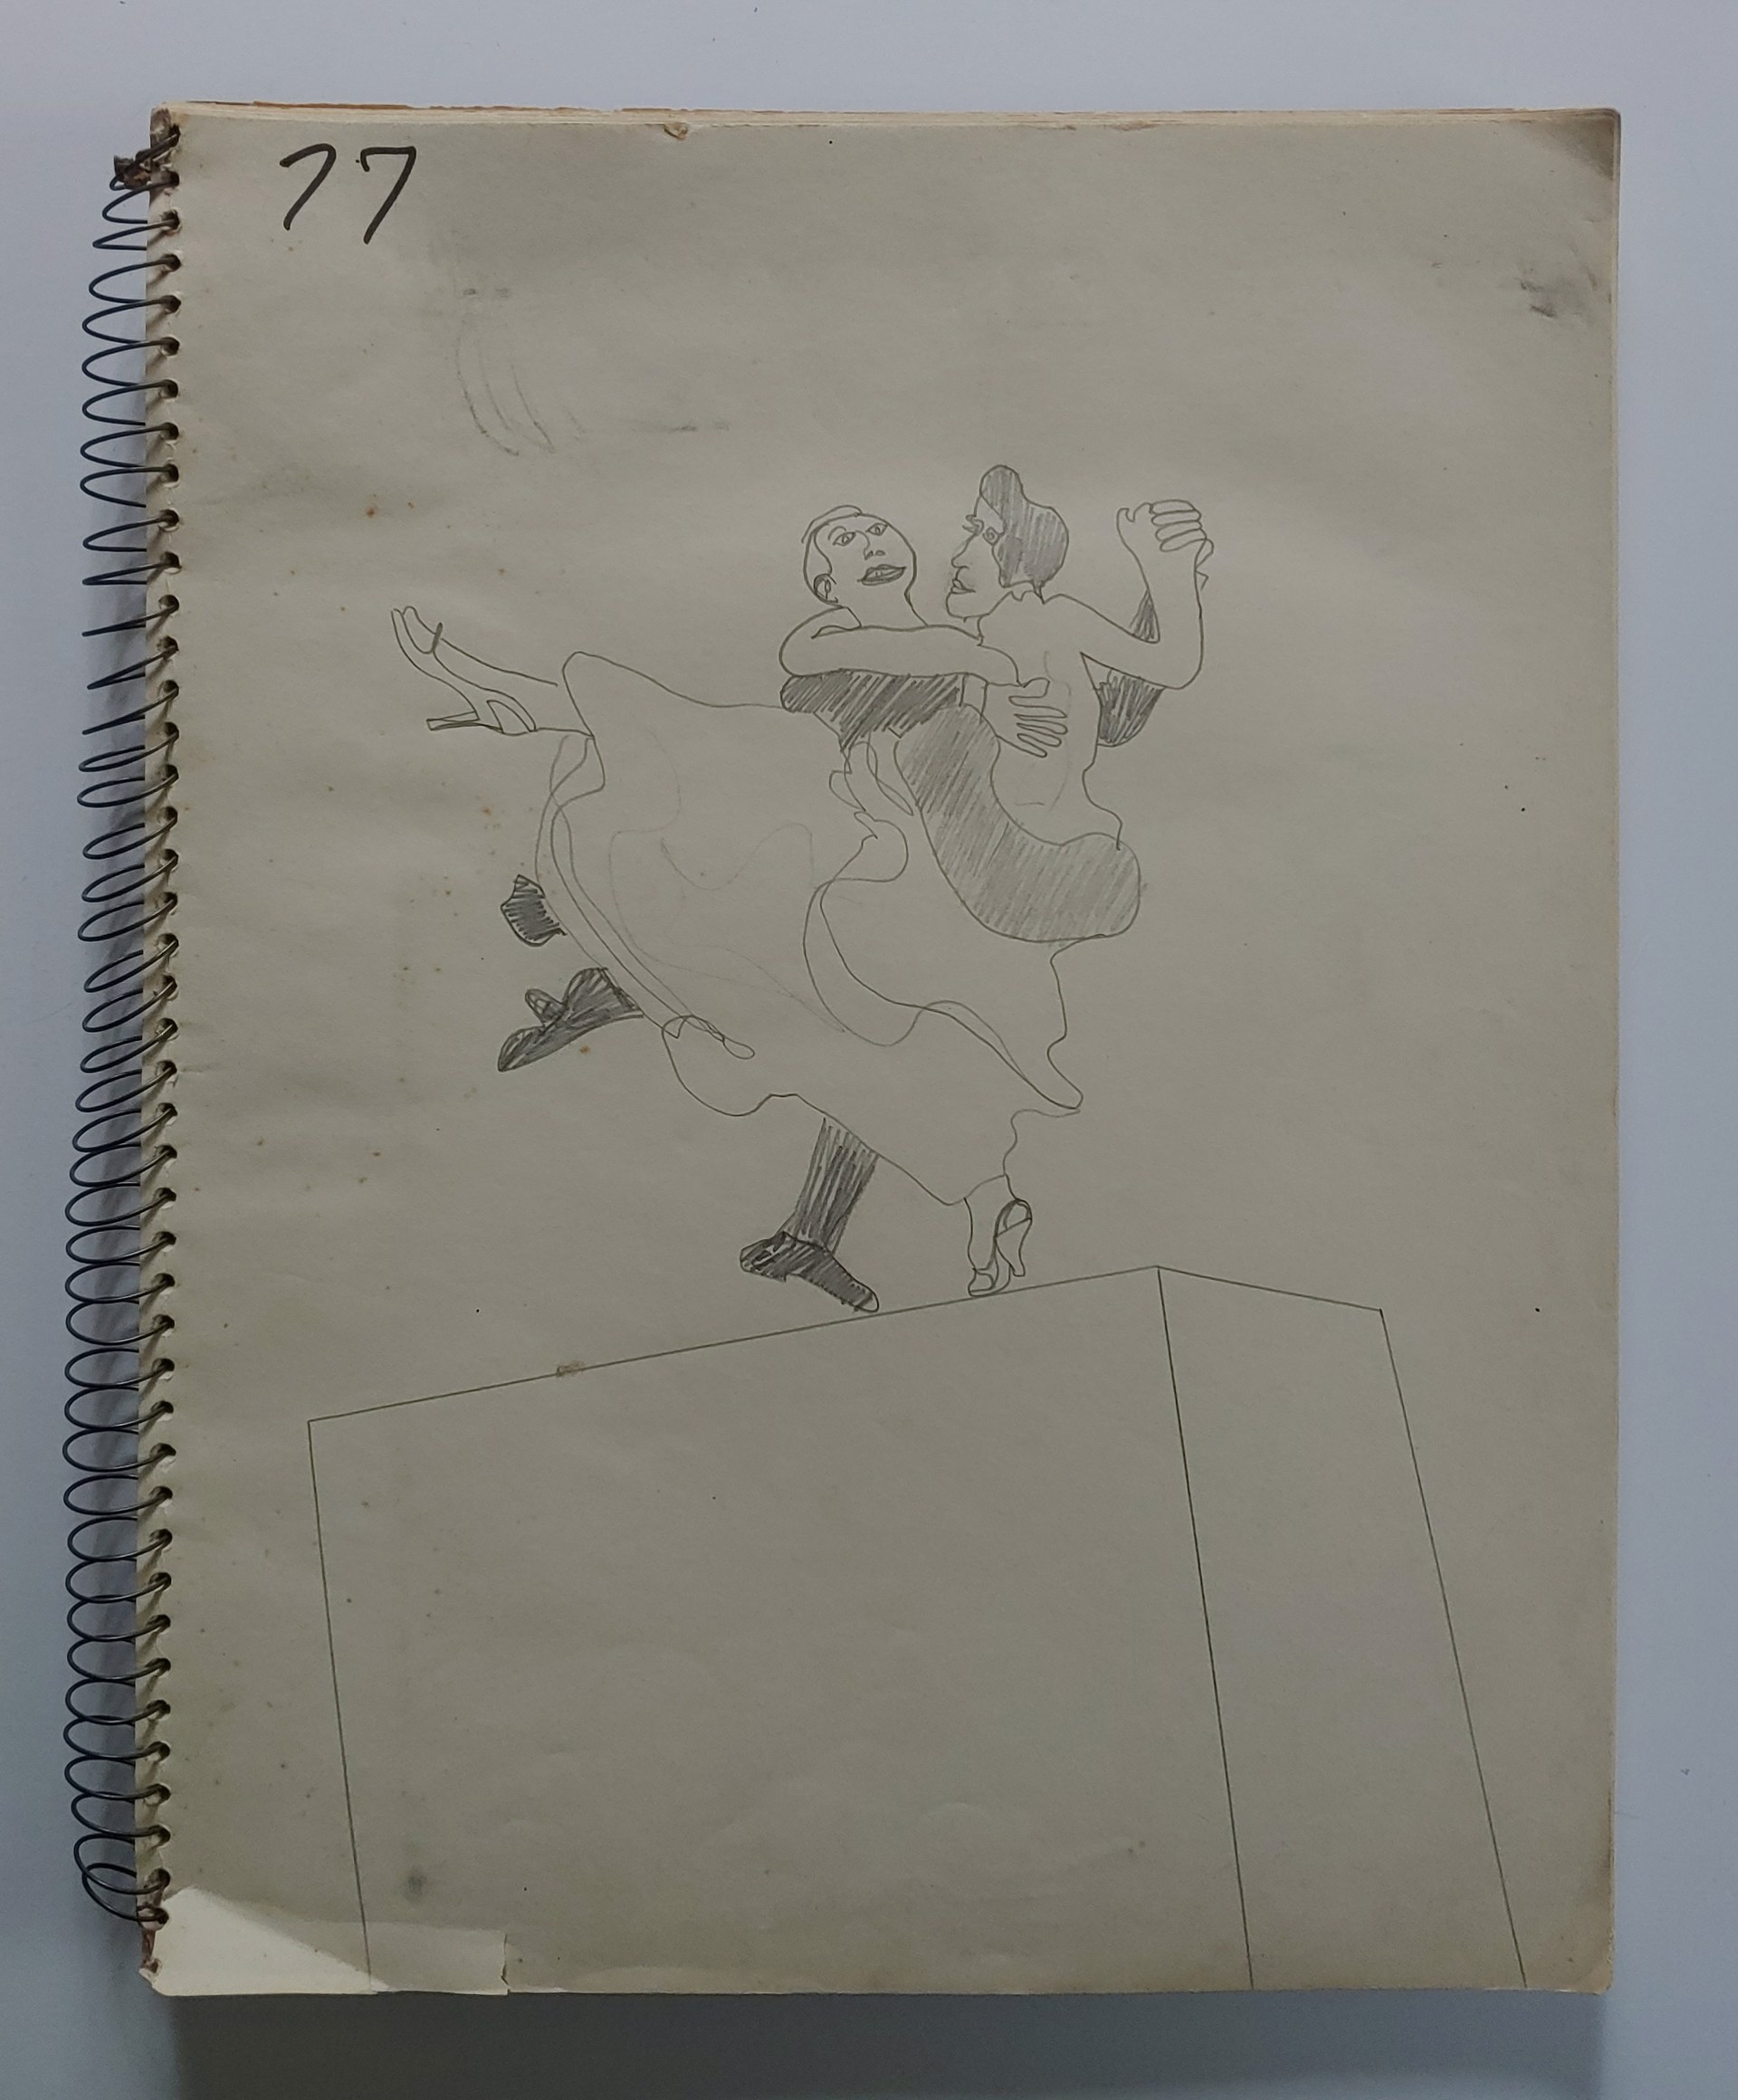 1977 Sketchbook by David Amdur